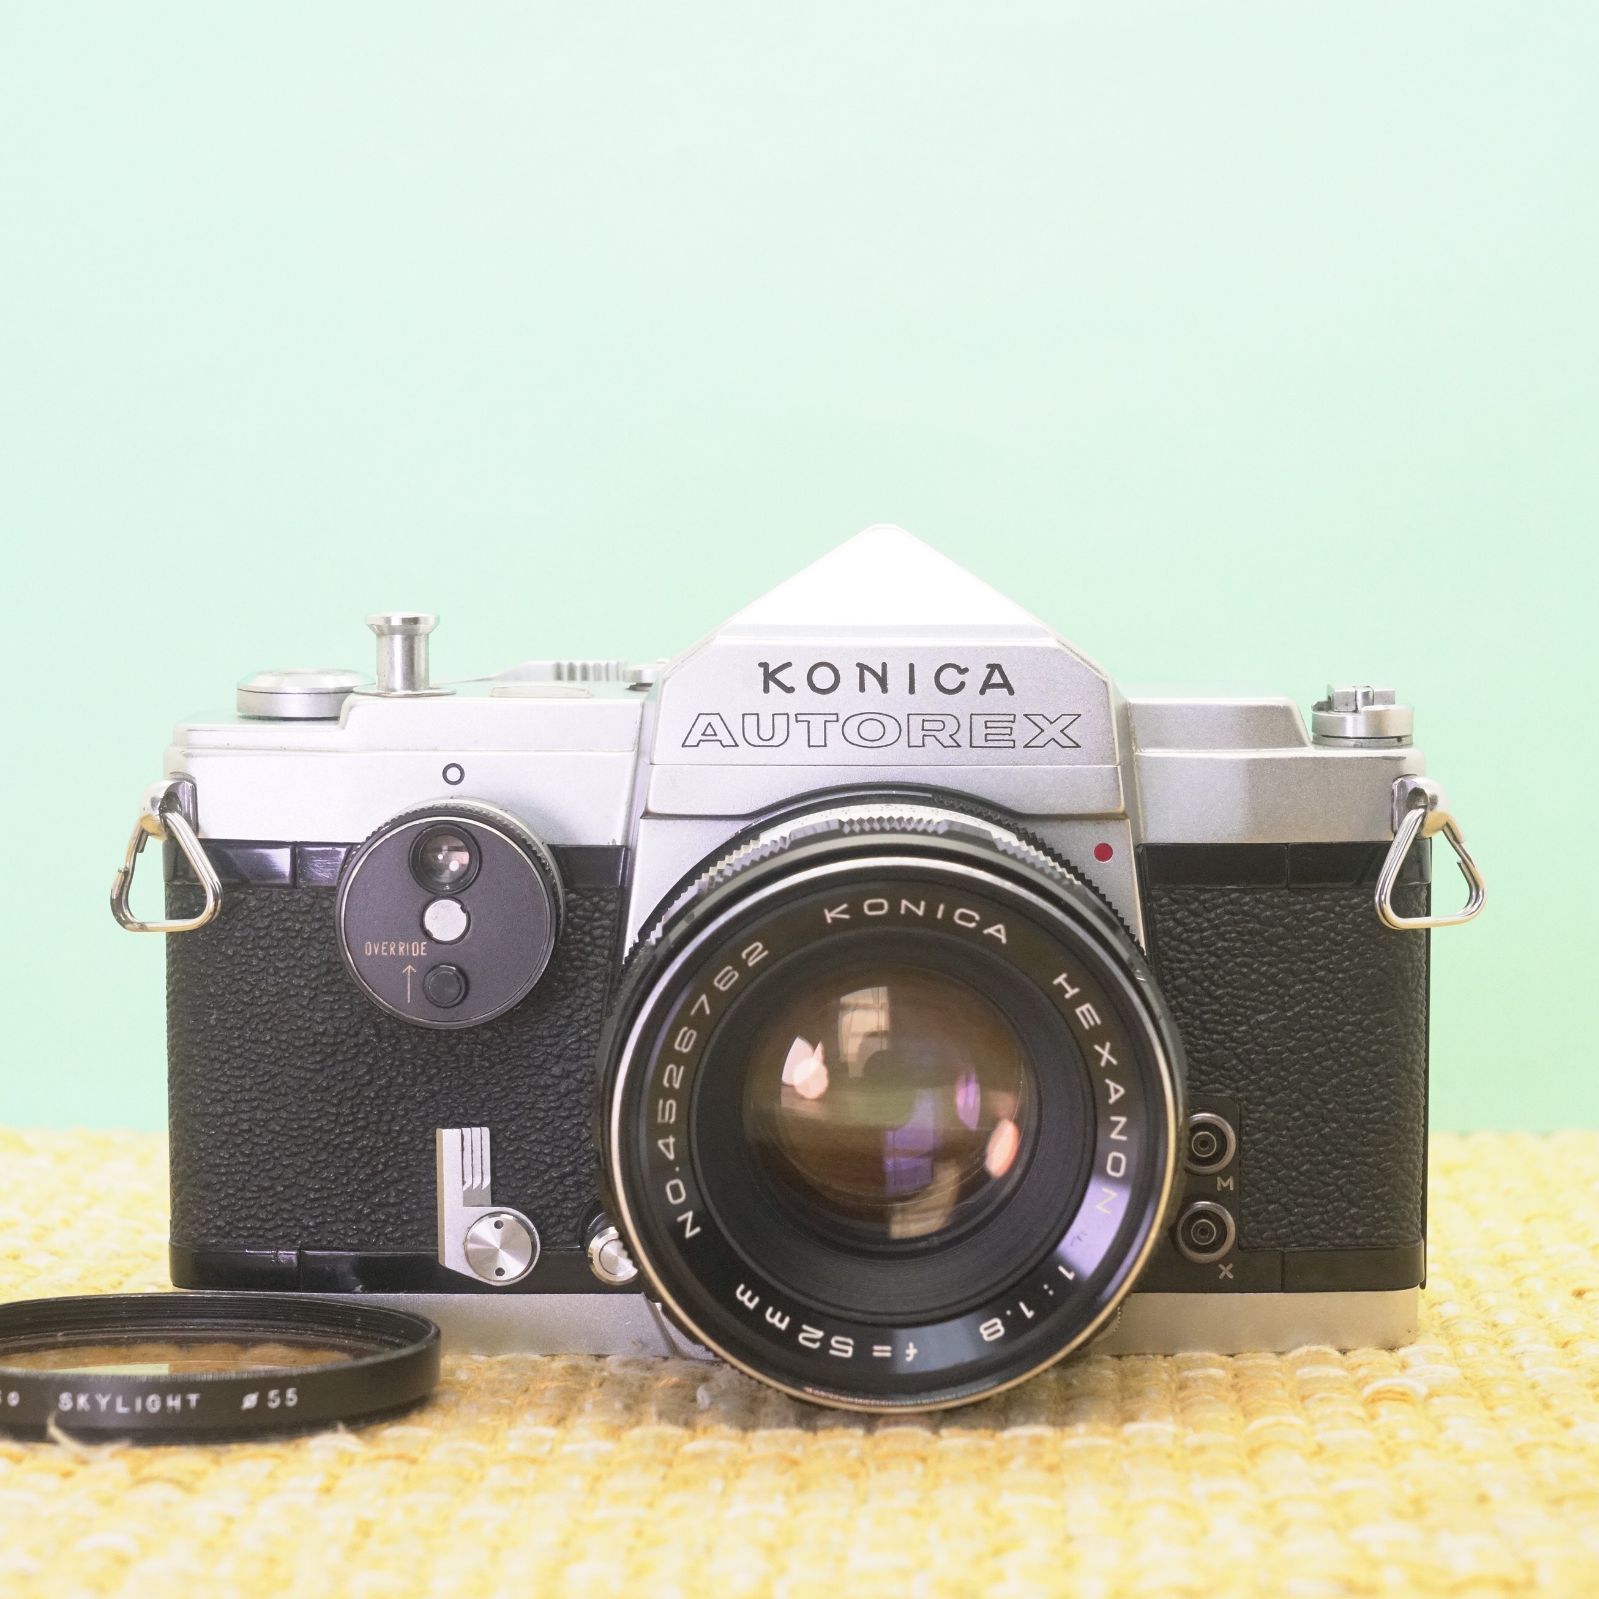 動作確認済◎コニカ AUTOREX × 52mm f1.8 フィルムカメラ 19-